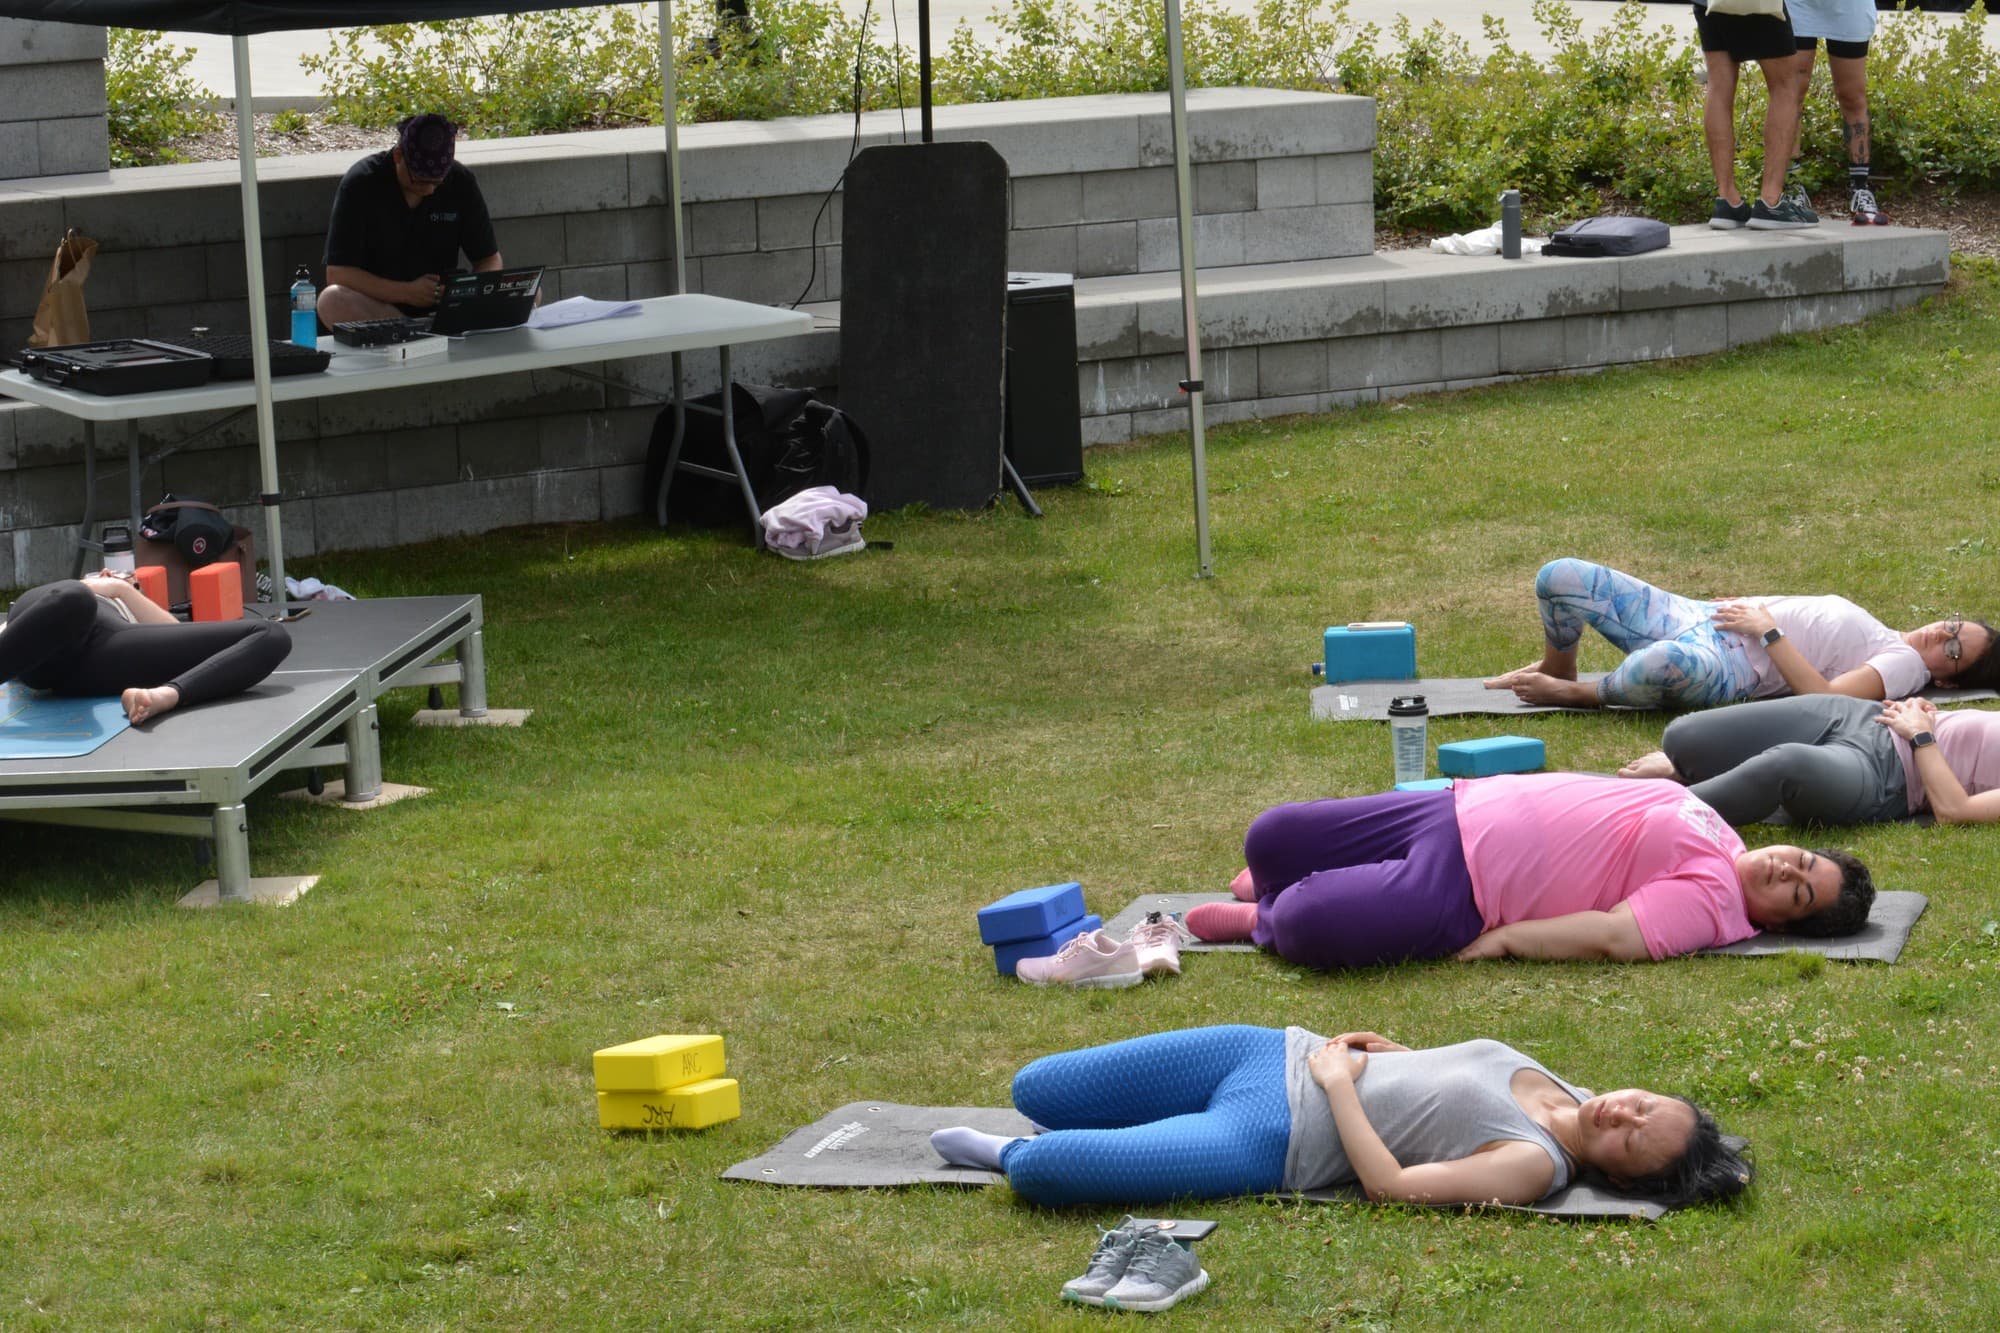 Le mattine zen tornano al campus di Ottawa con lo yoga praticato all’aperto sul prato